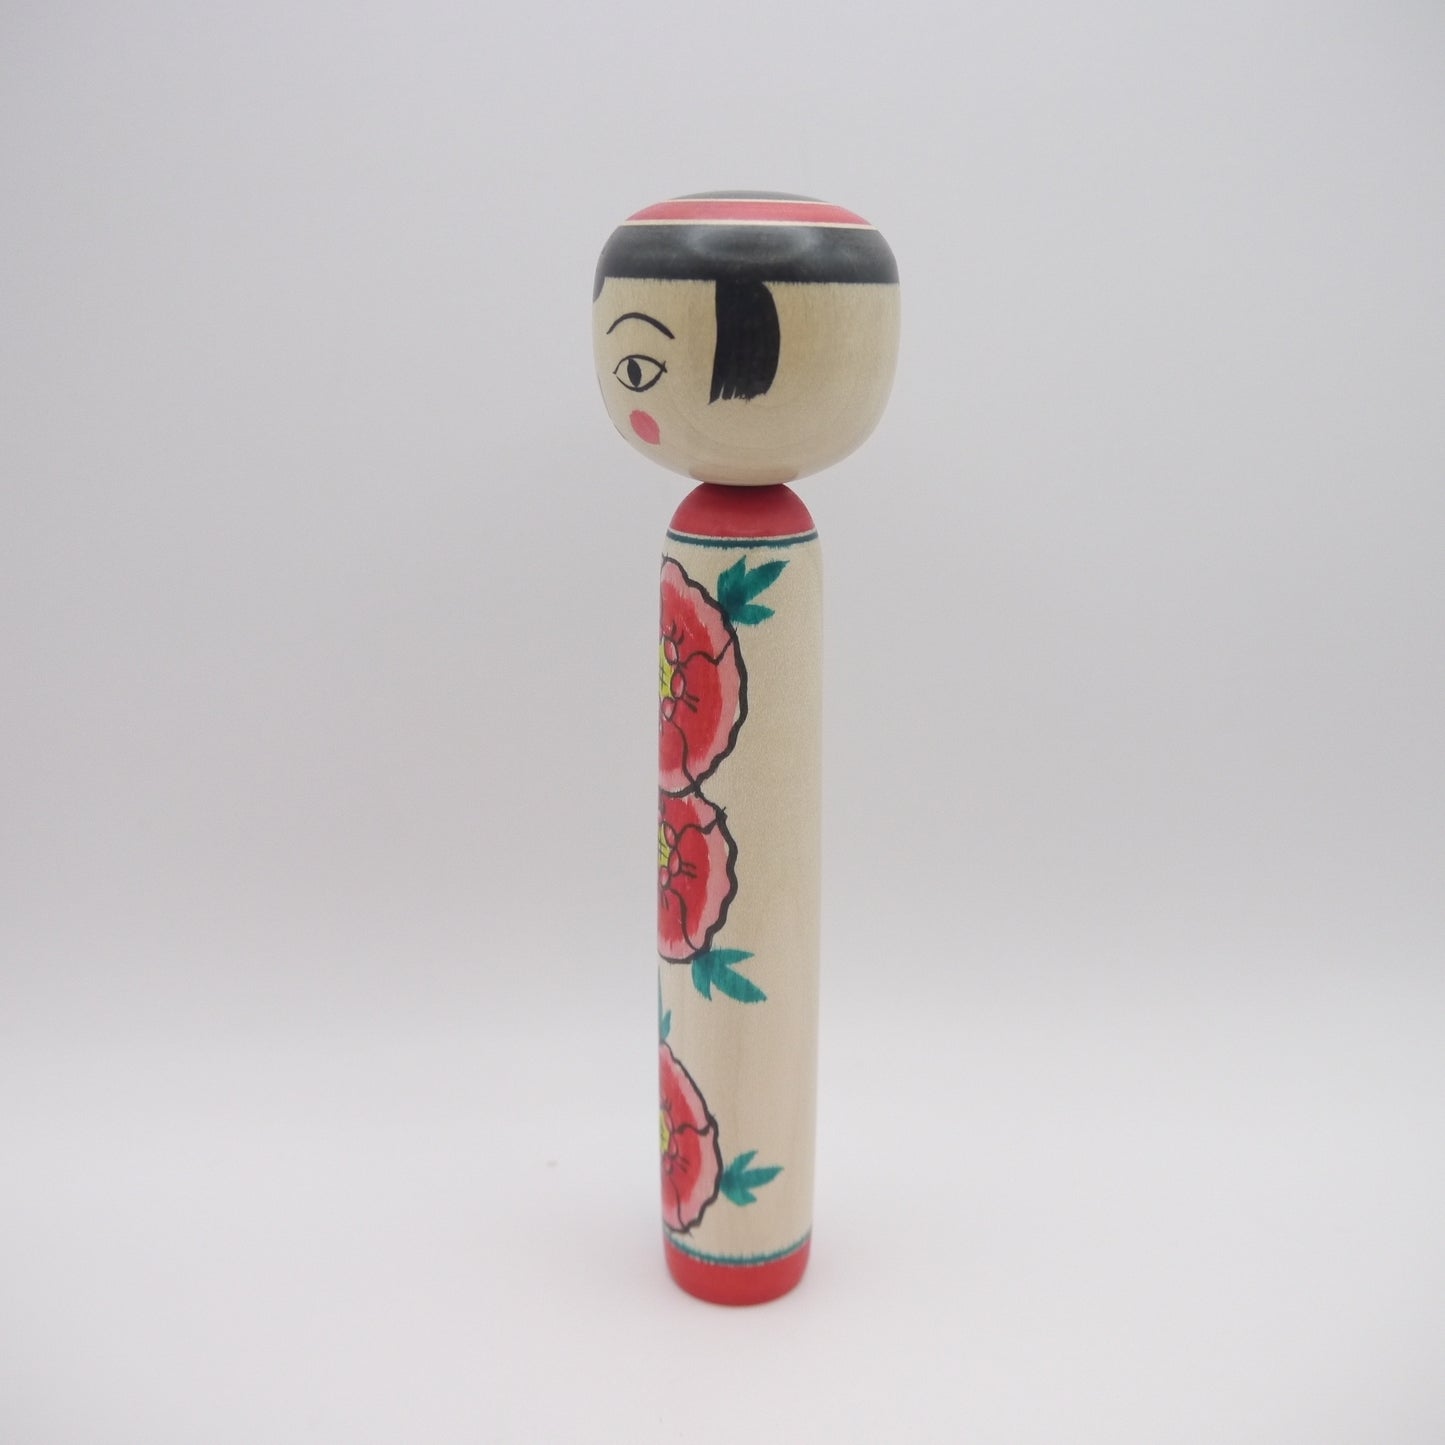 18cm Kokeshi doll by Koji Seya Takobozu